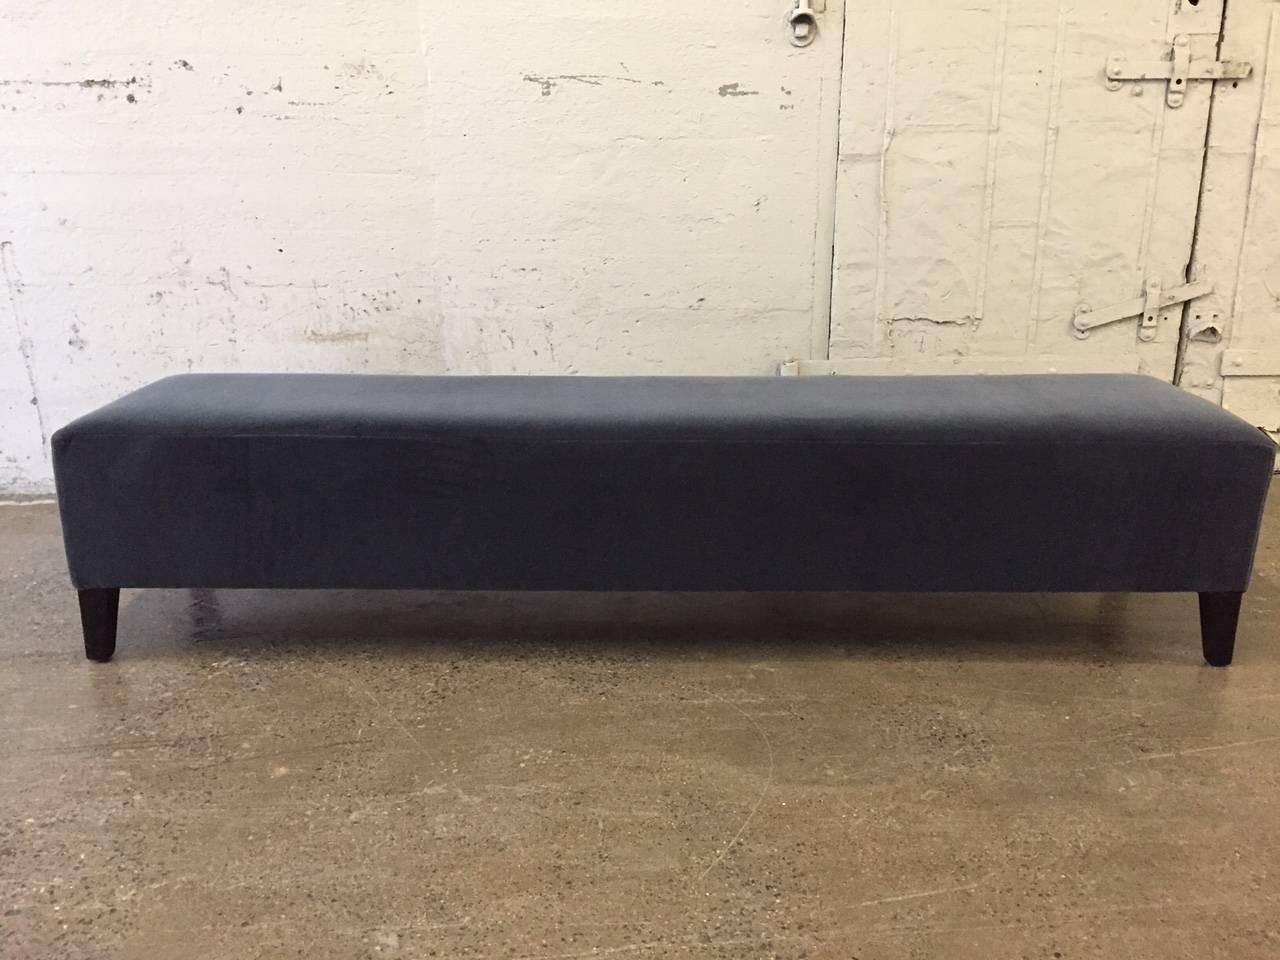 Long Art Deco upholstered bench.  Upholstered in velvet with black lacquered wood legs. 
